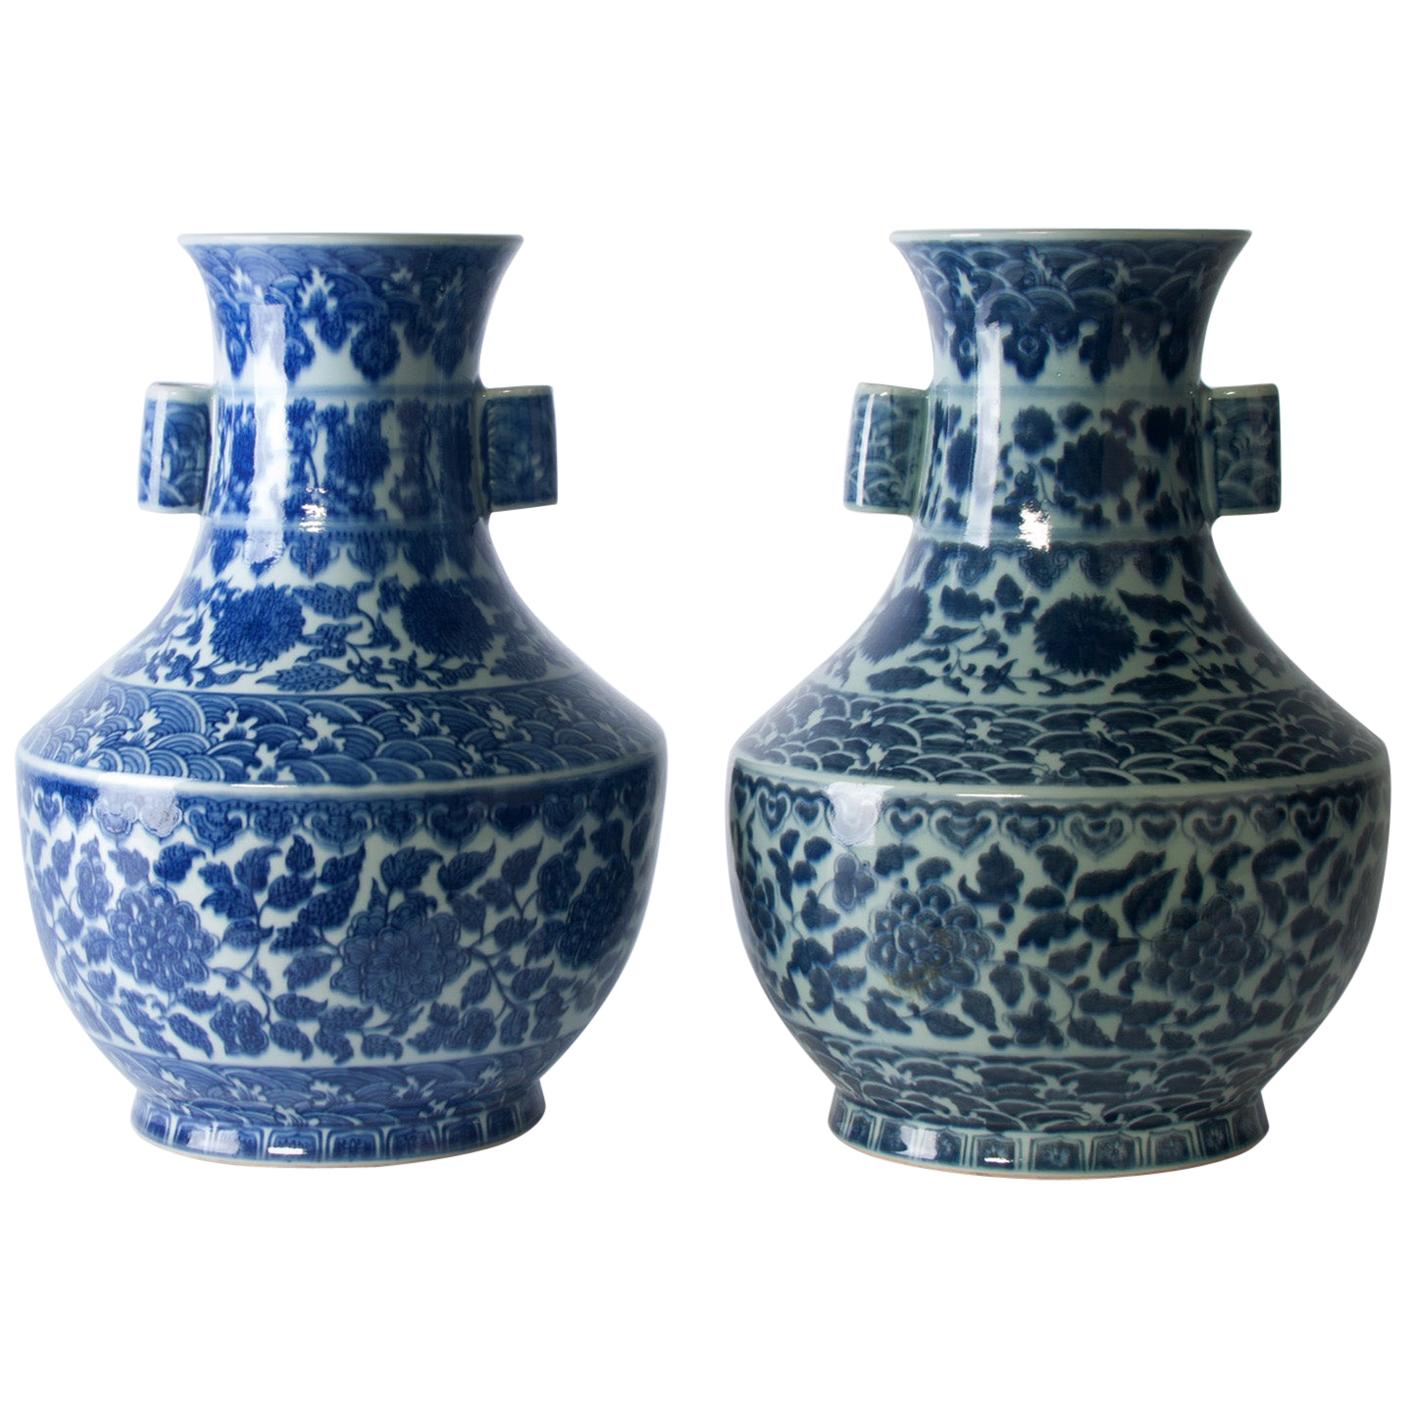 Chinesische Vasen des 19. Jahrhunderts